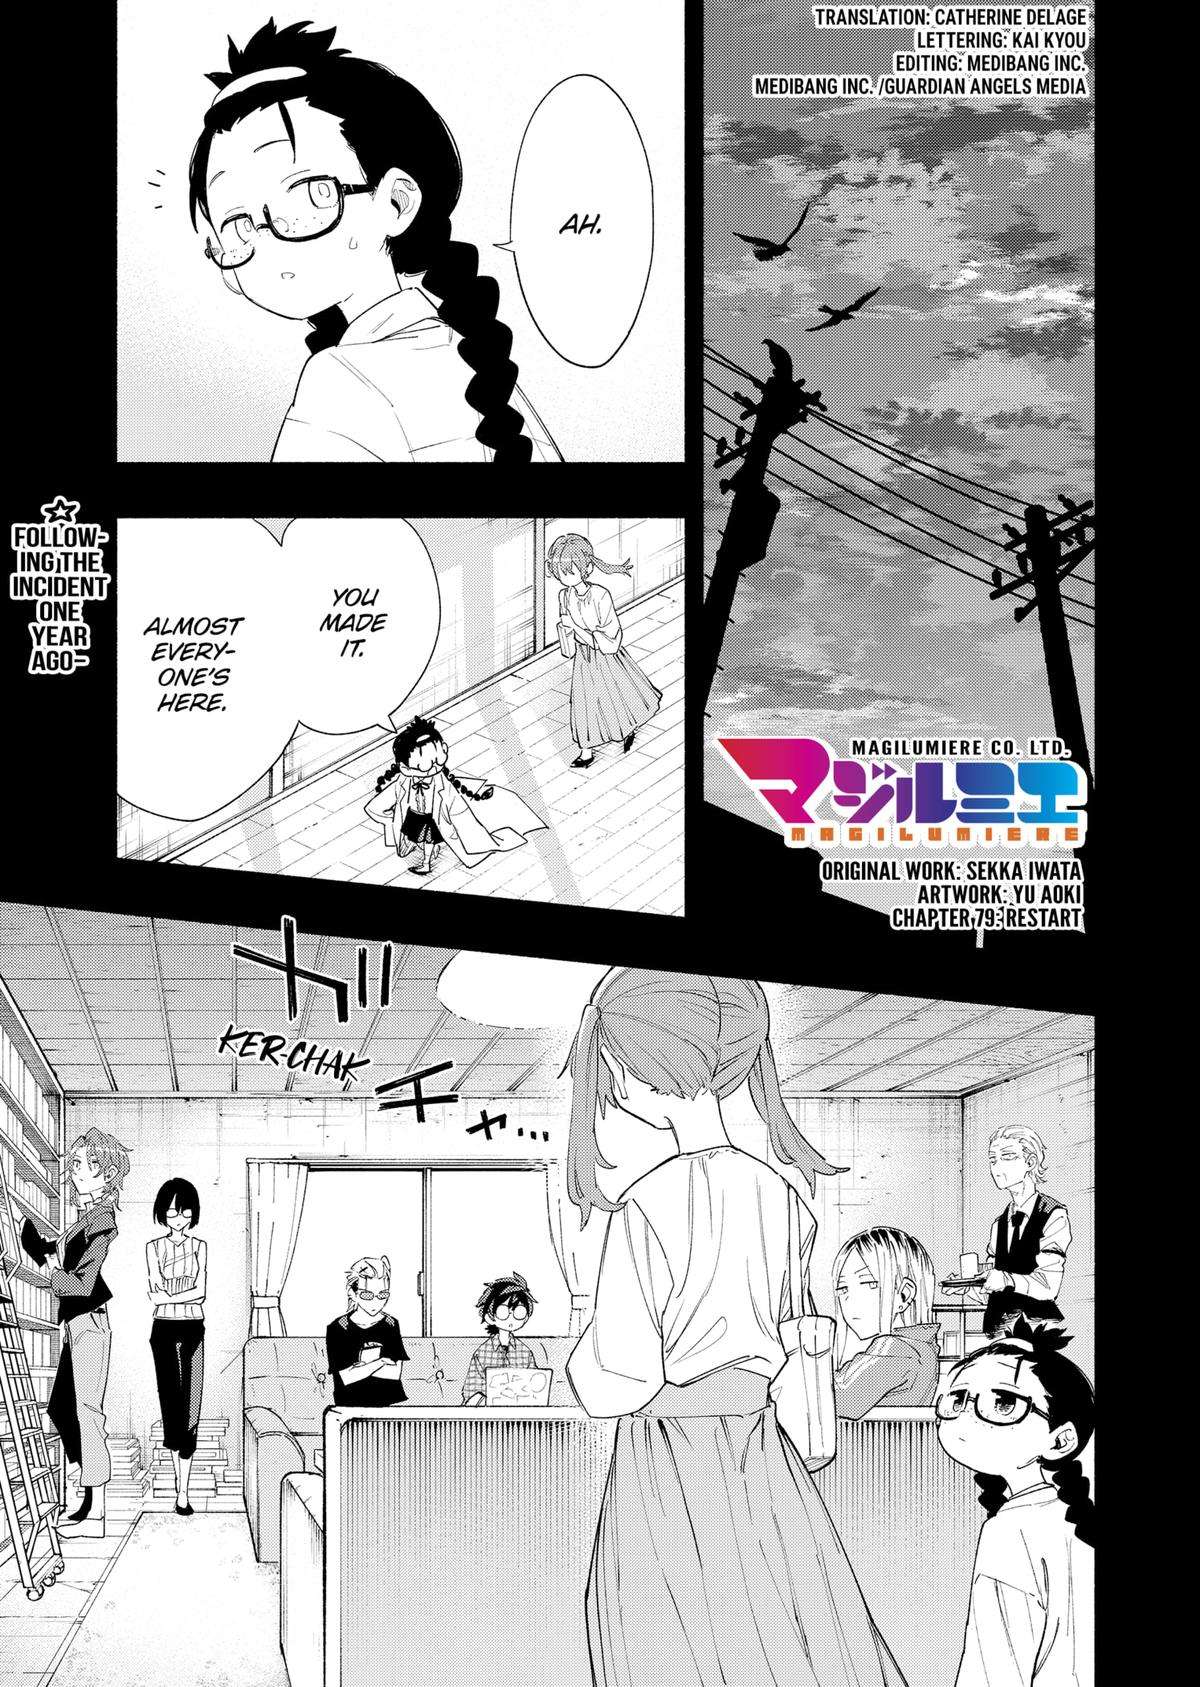 Kabushiki Gaisha Magi Lumiere - chapter 79 - #1